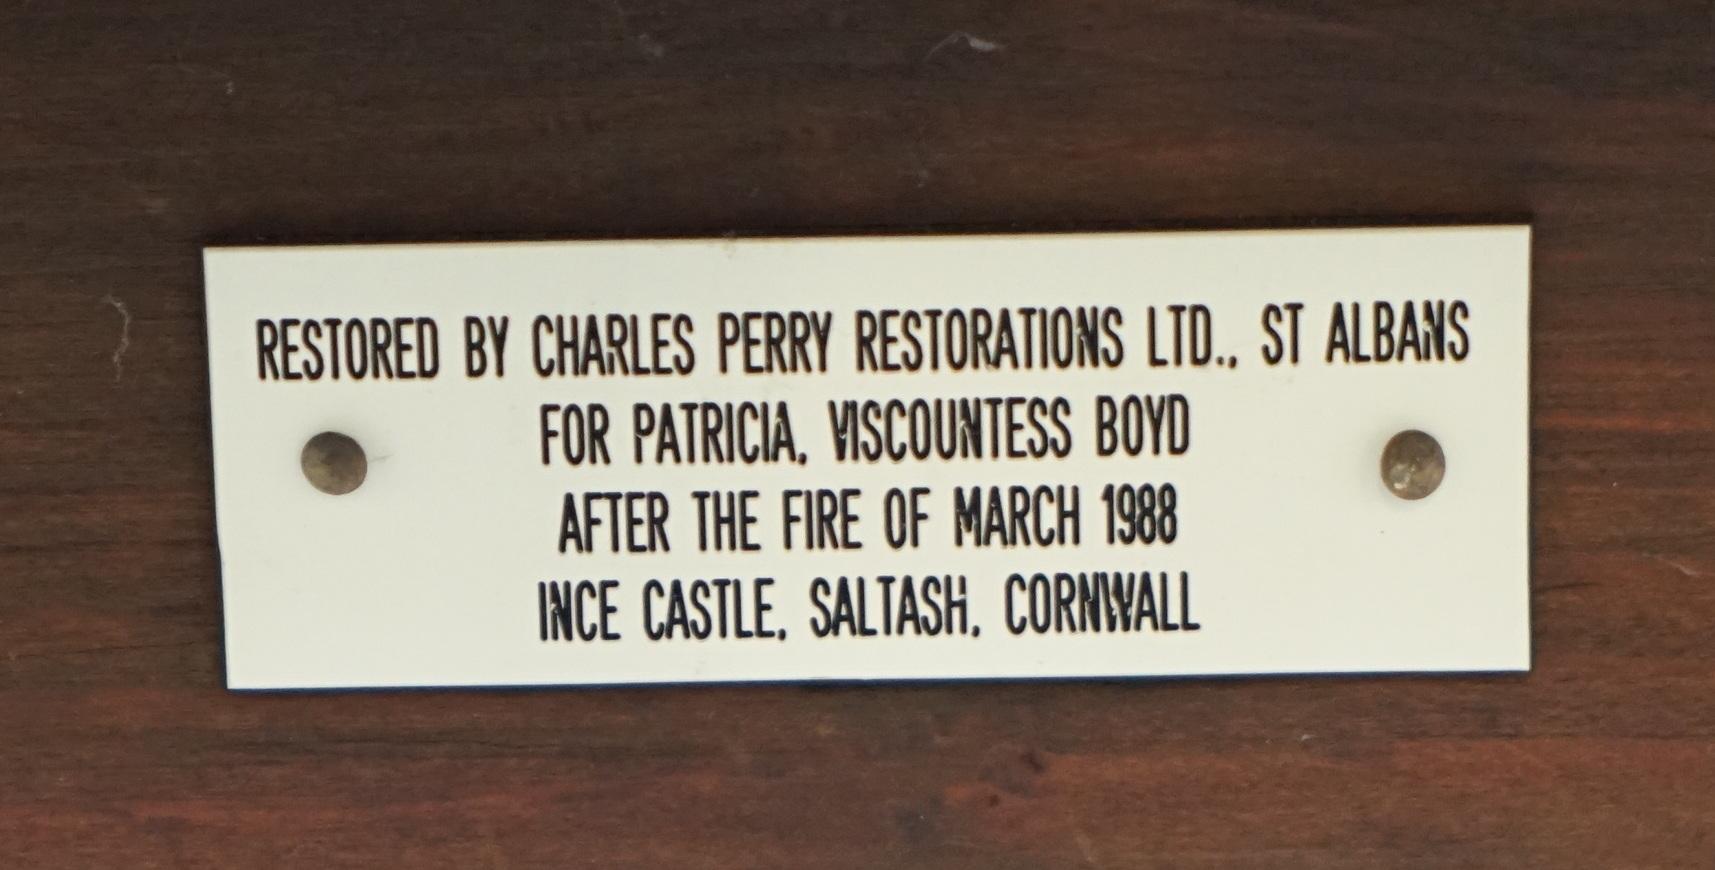 Wir freuen uns, diese sehr seltene Anrichte aus Mahagoni George III. aus Ince Castle Saltash zum Verkauf anbieten zu können. Sie wurde 1988 für Patricia Viscountess Boyd's restauriert.

Ein sehr seltener Fund, ich habe ein Bild der Anrichte in der